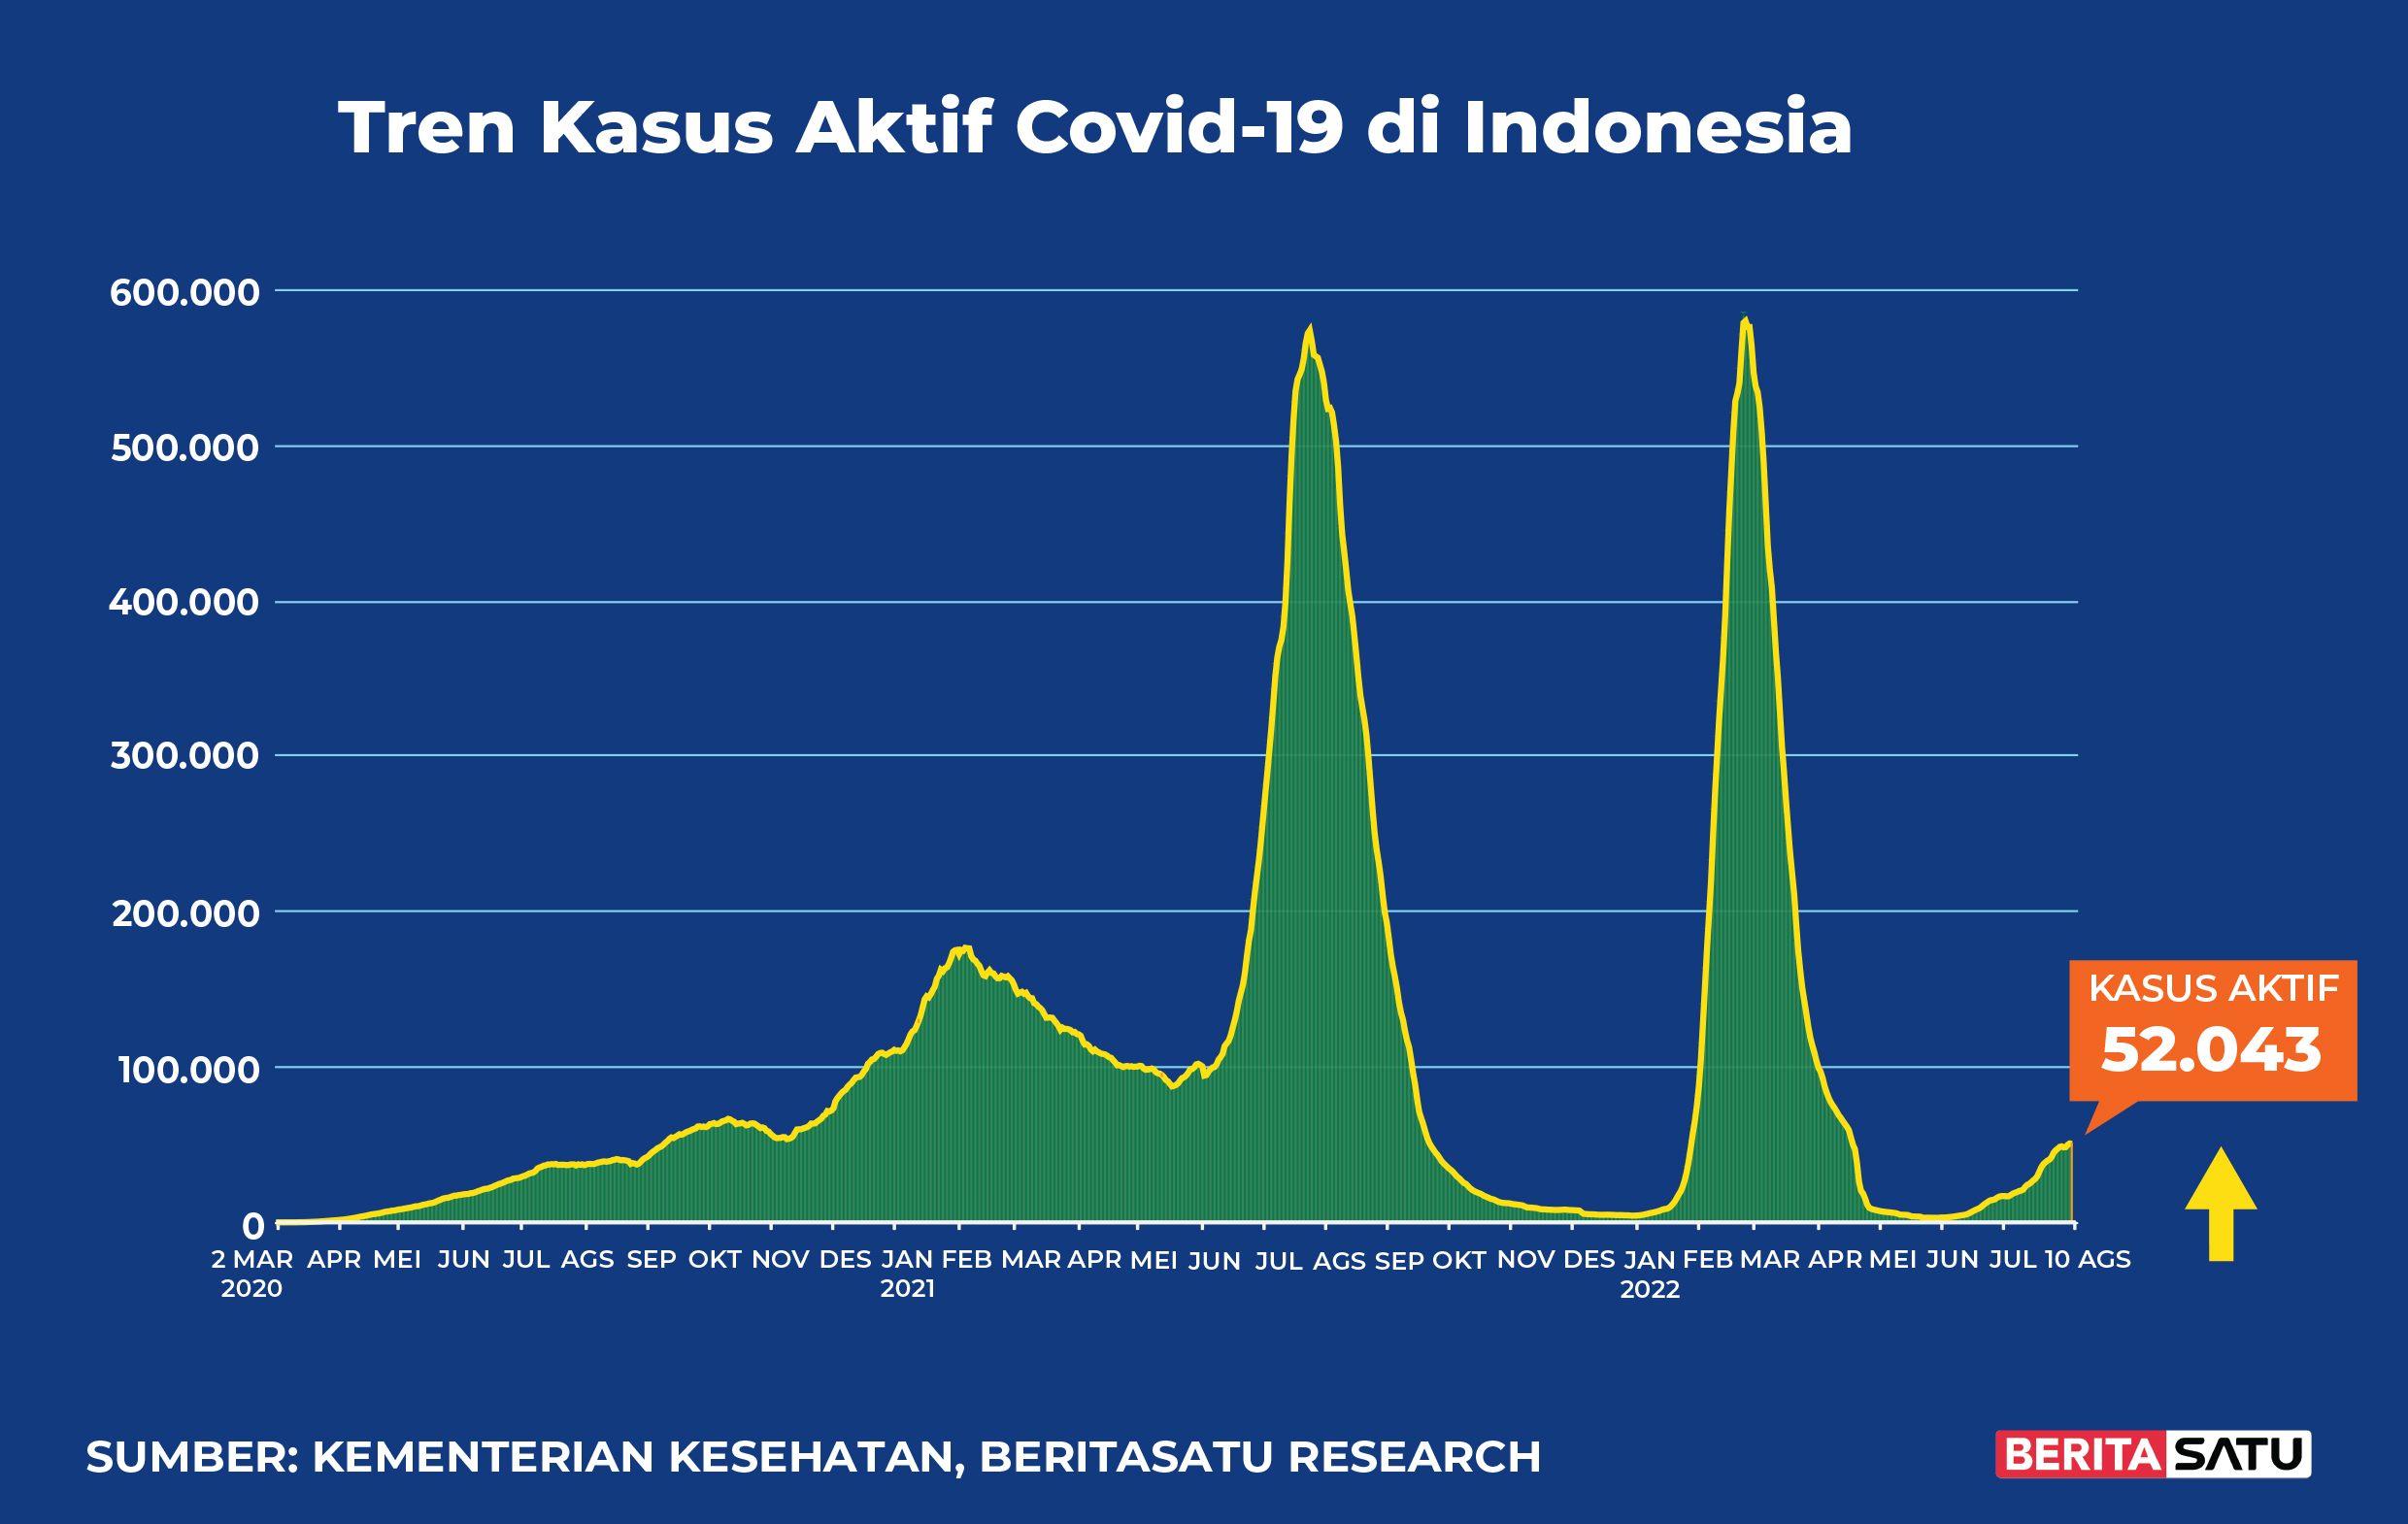 Kasus Aktif Covid-19 di Indonesia sampai 10 Agustus 2022